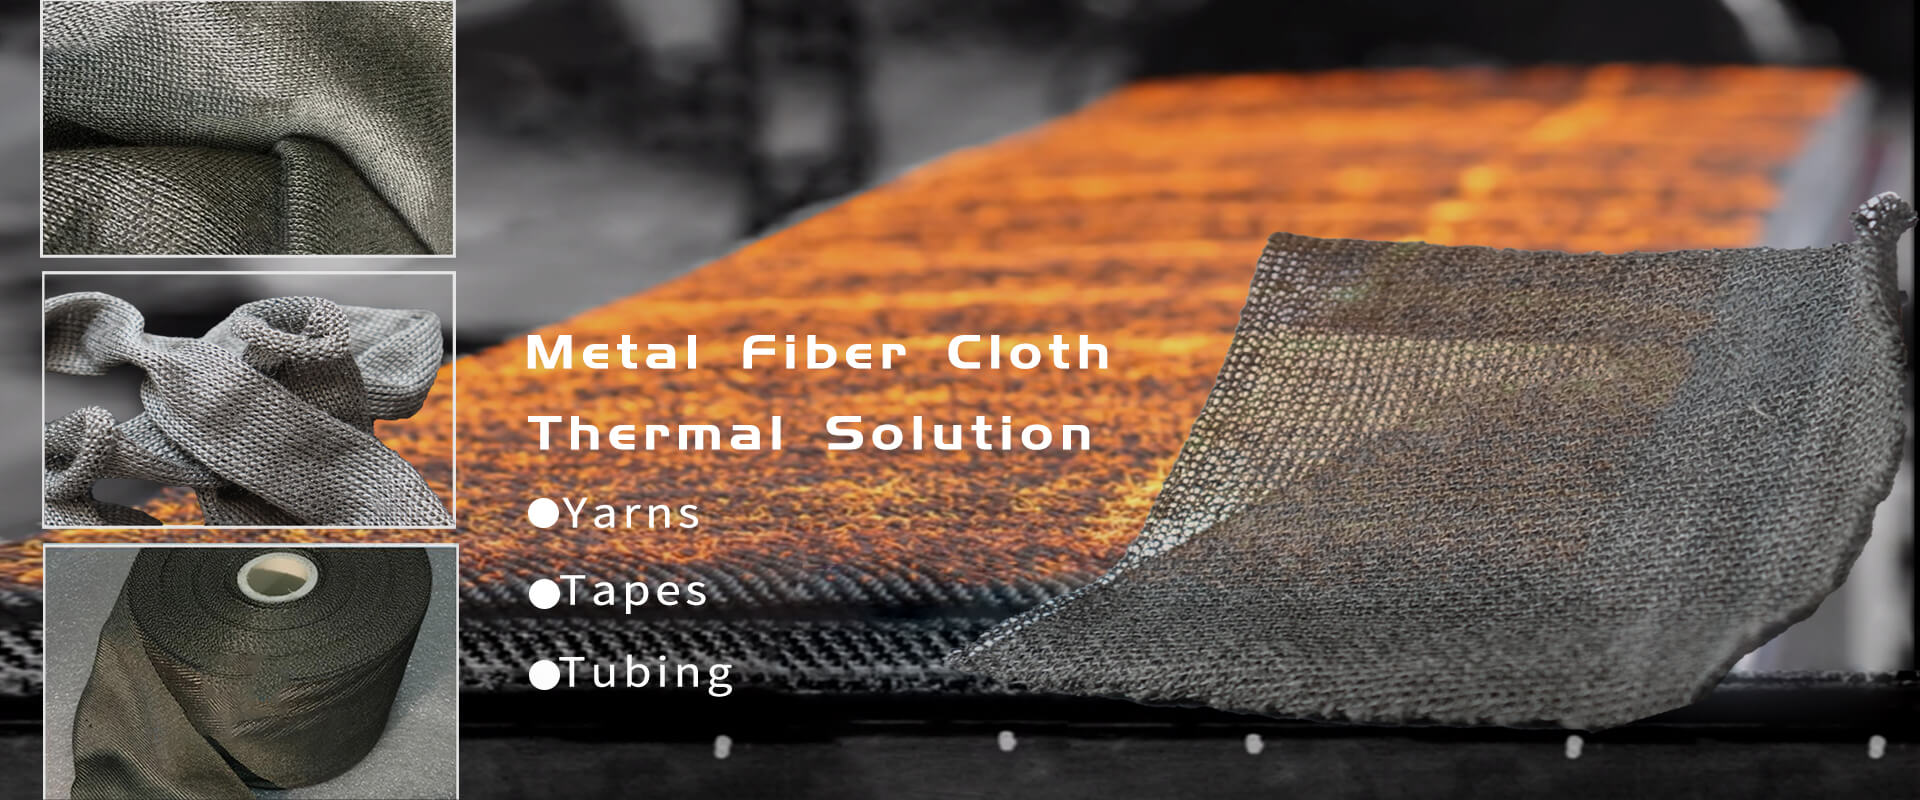 thermal resistant metal fiber cloth<br>thermal resistant metal fiber fabrics<br>thermal resistant metal fiber tapes<br>thermal resistant metal fiber sleeves